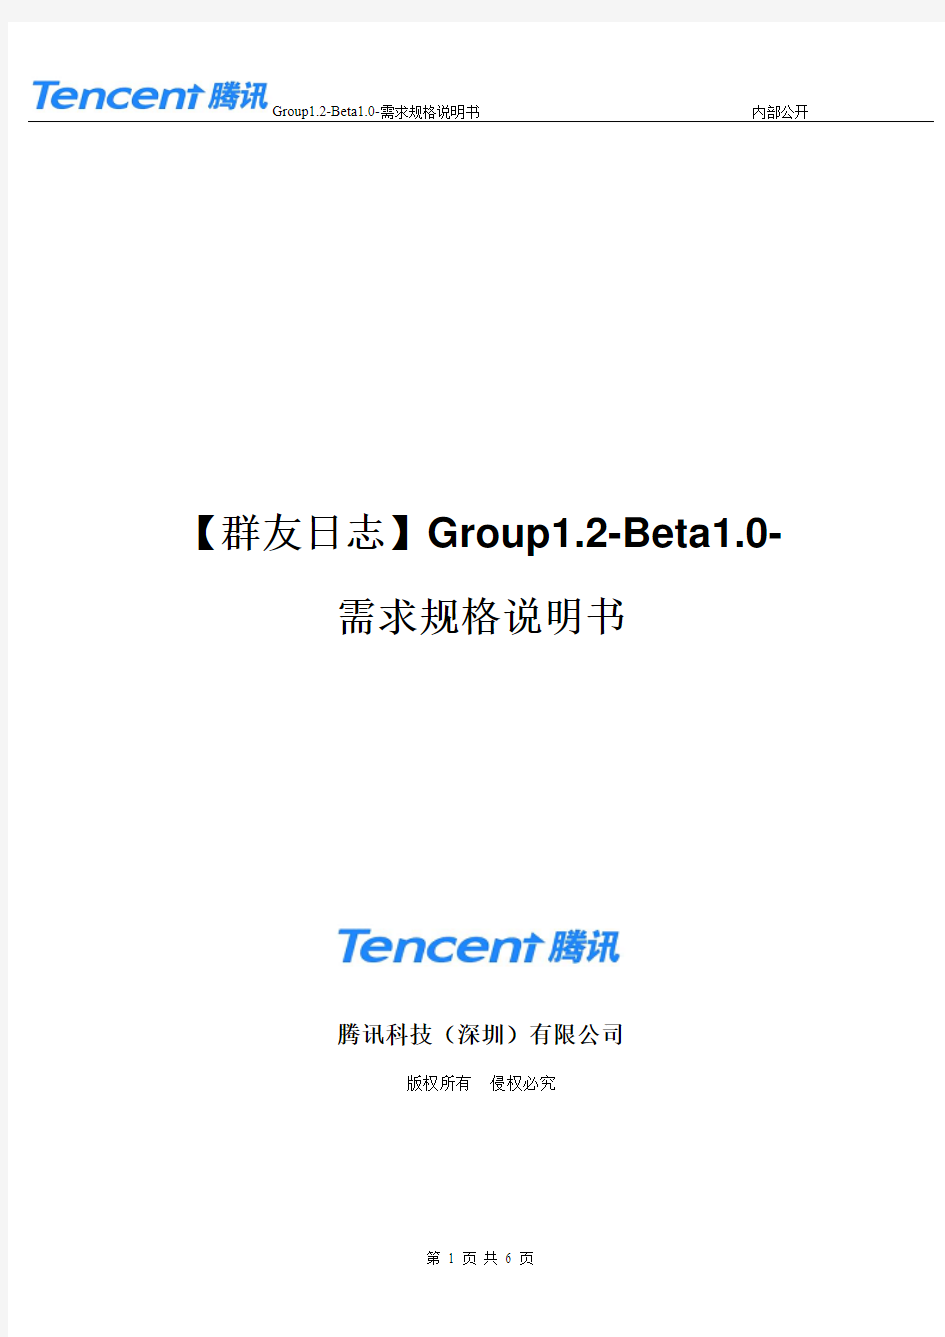 【群友日志】Group1.2-Beta1.0-需求规格说明书(1)